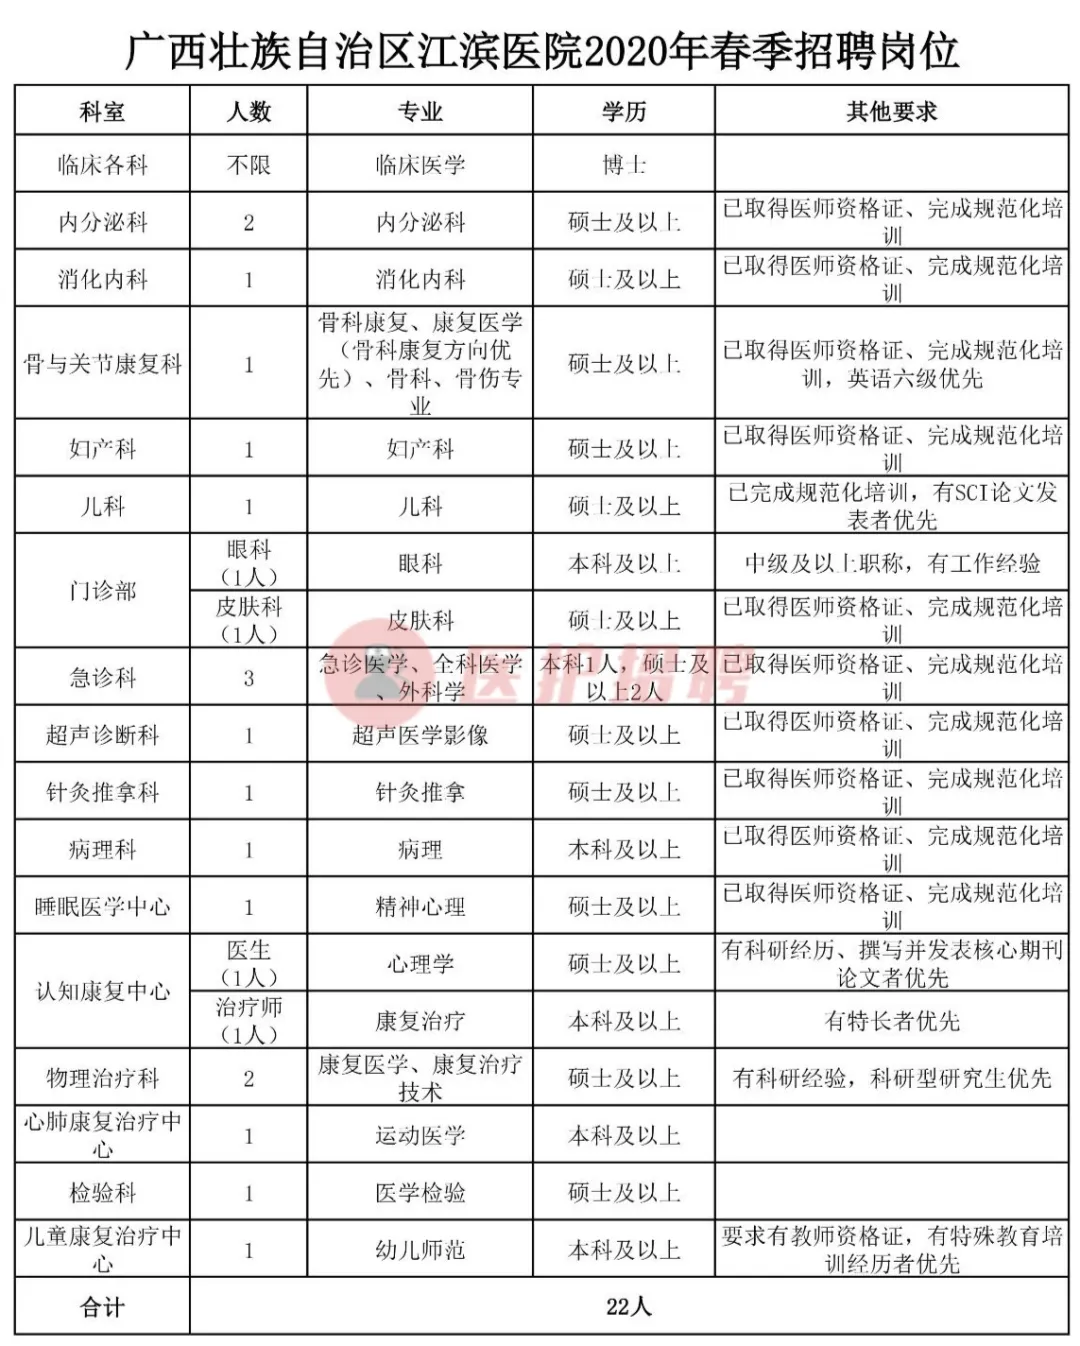 [广西] 广西壮族自治区江滨医院，2020年招聘医师、医技等22人